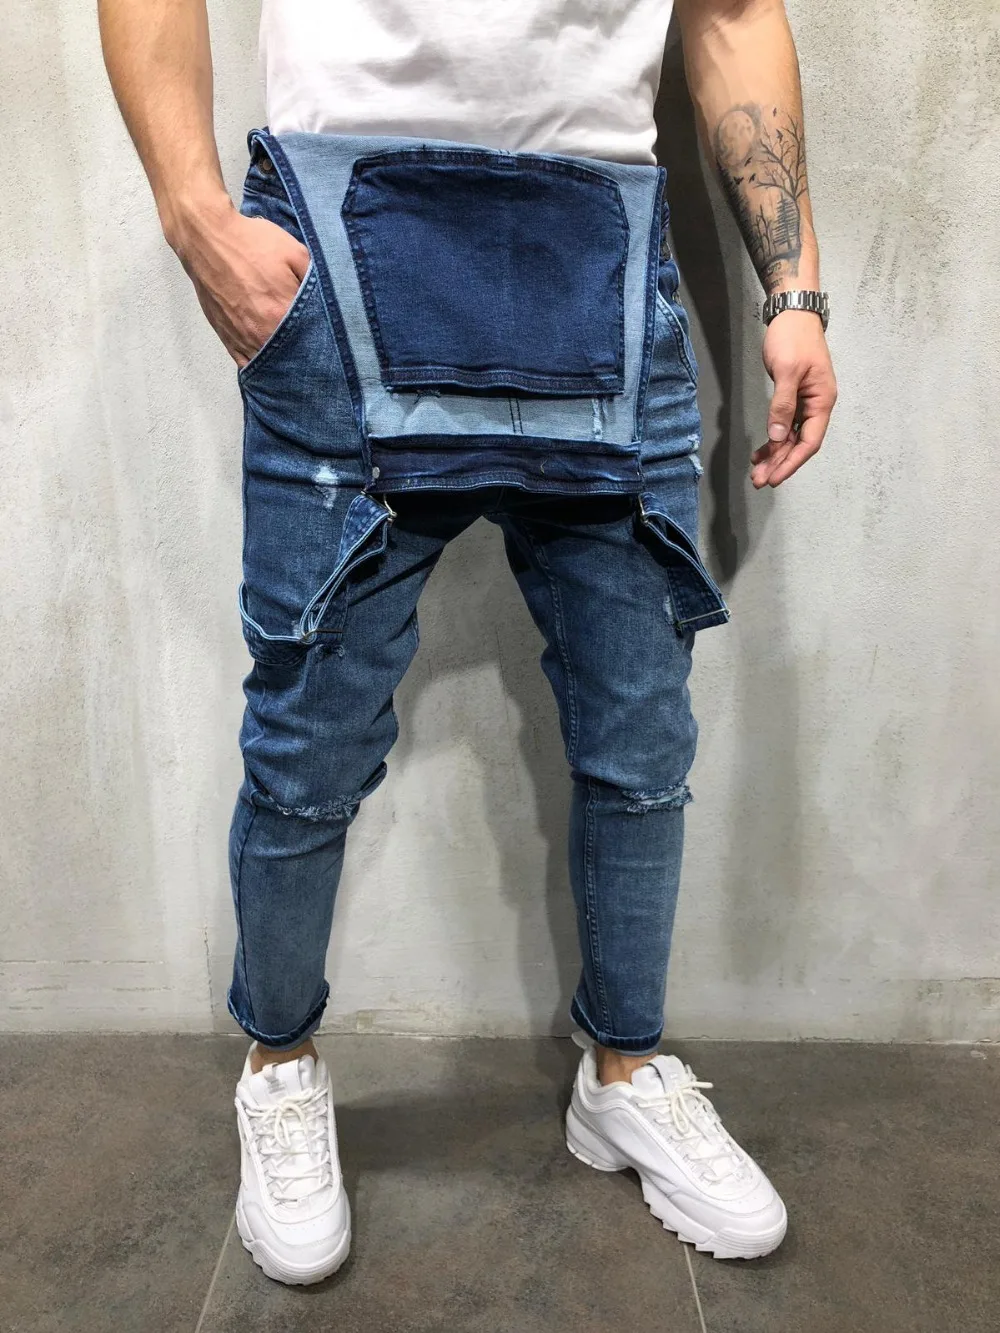 REPPUNK 2018 New Streetwear Jeans De Hombre Distimeados Baberos De Mezclilla Para Hombre Pantalones De Liga Más El Tamaño S XXXL De 47,81 € | DHgate